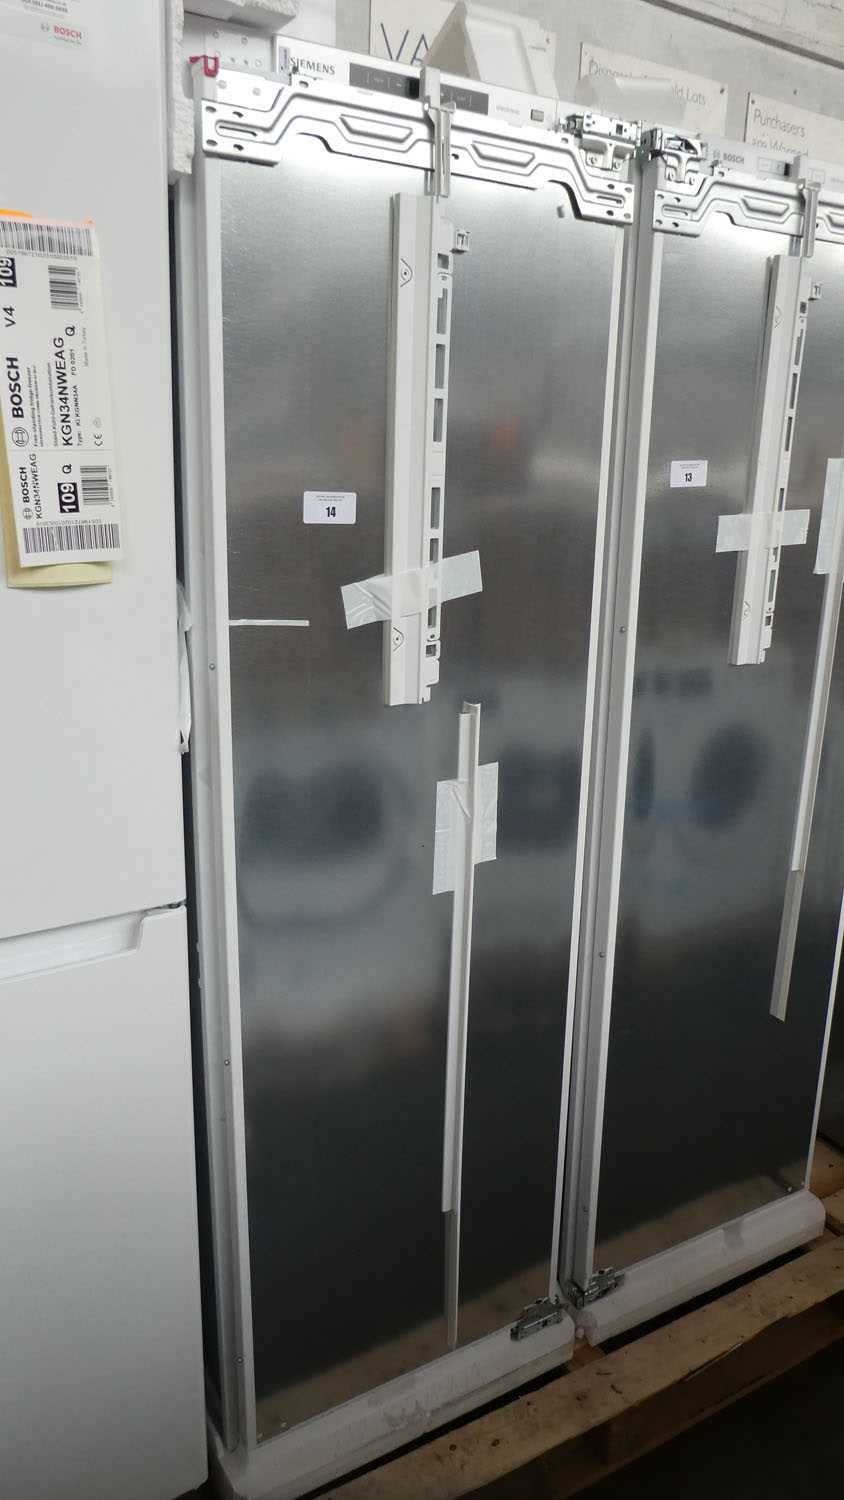 Lot 14 - KI82LAFF0-B Siemens Built-in larder fridge